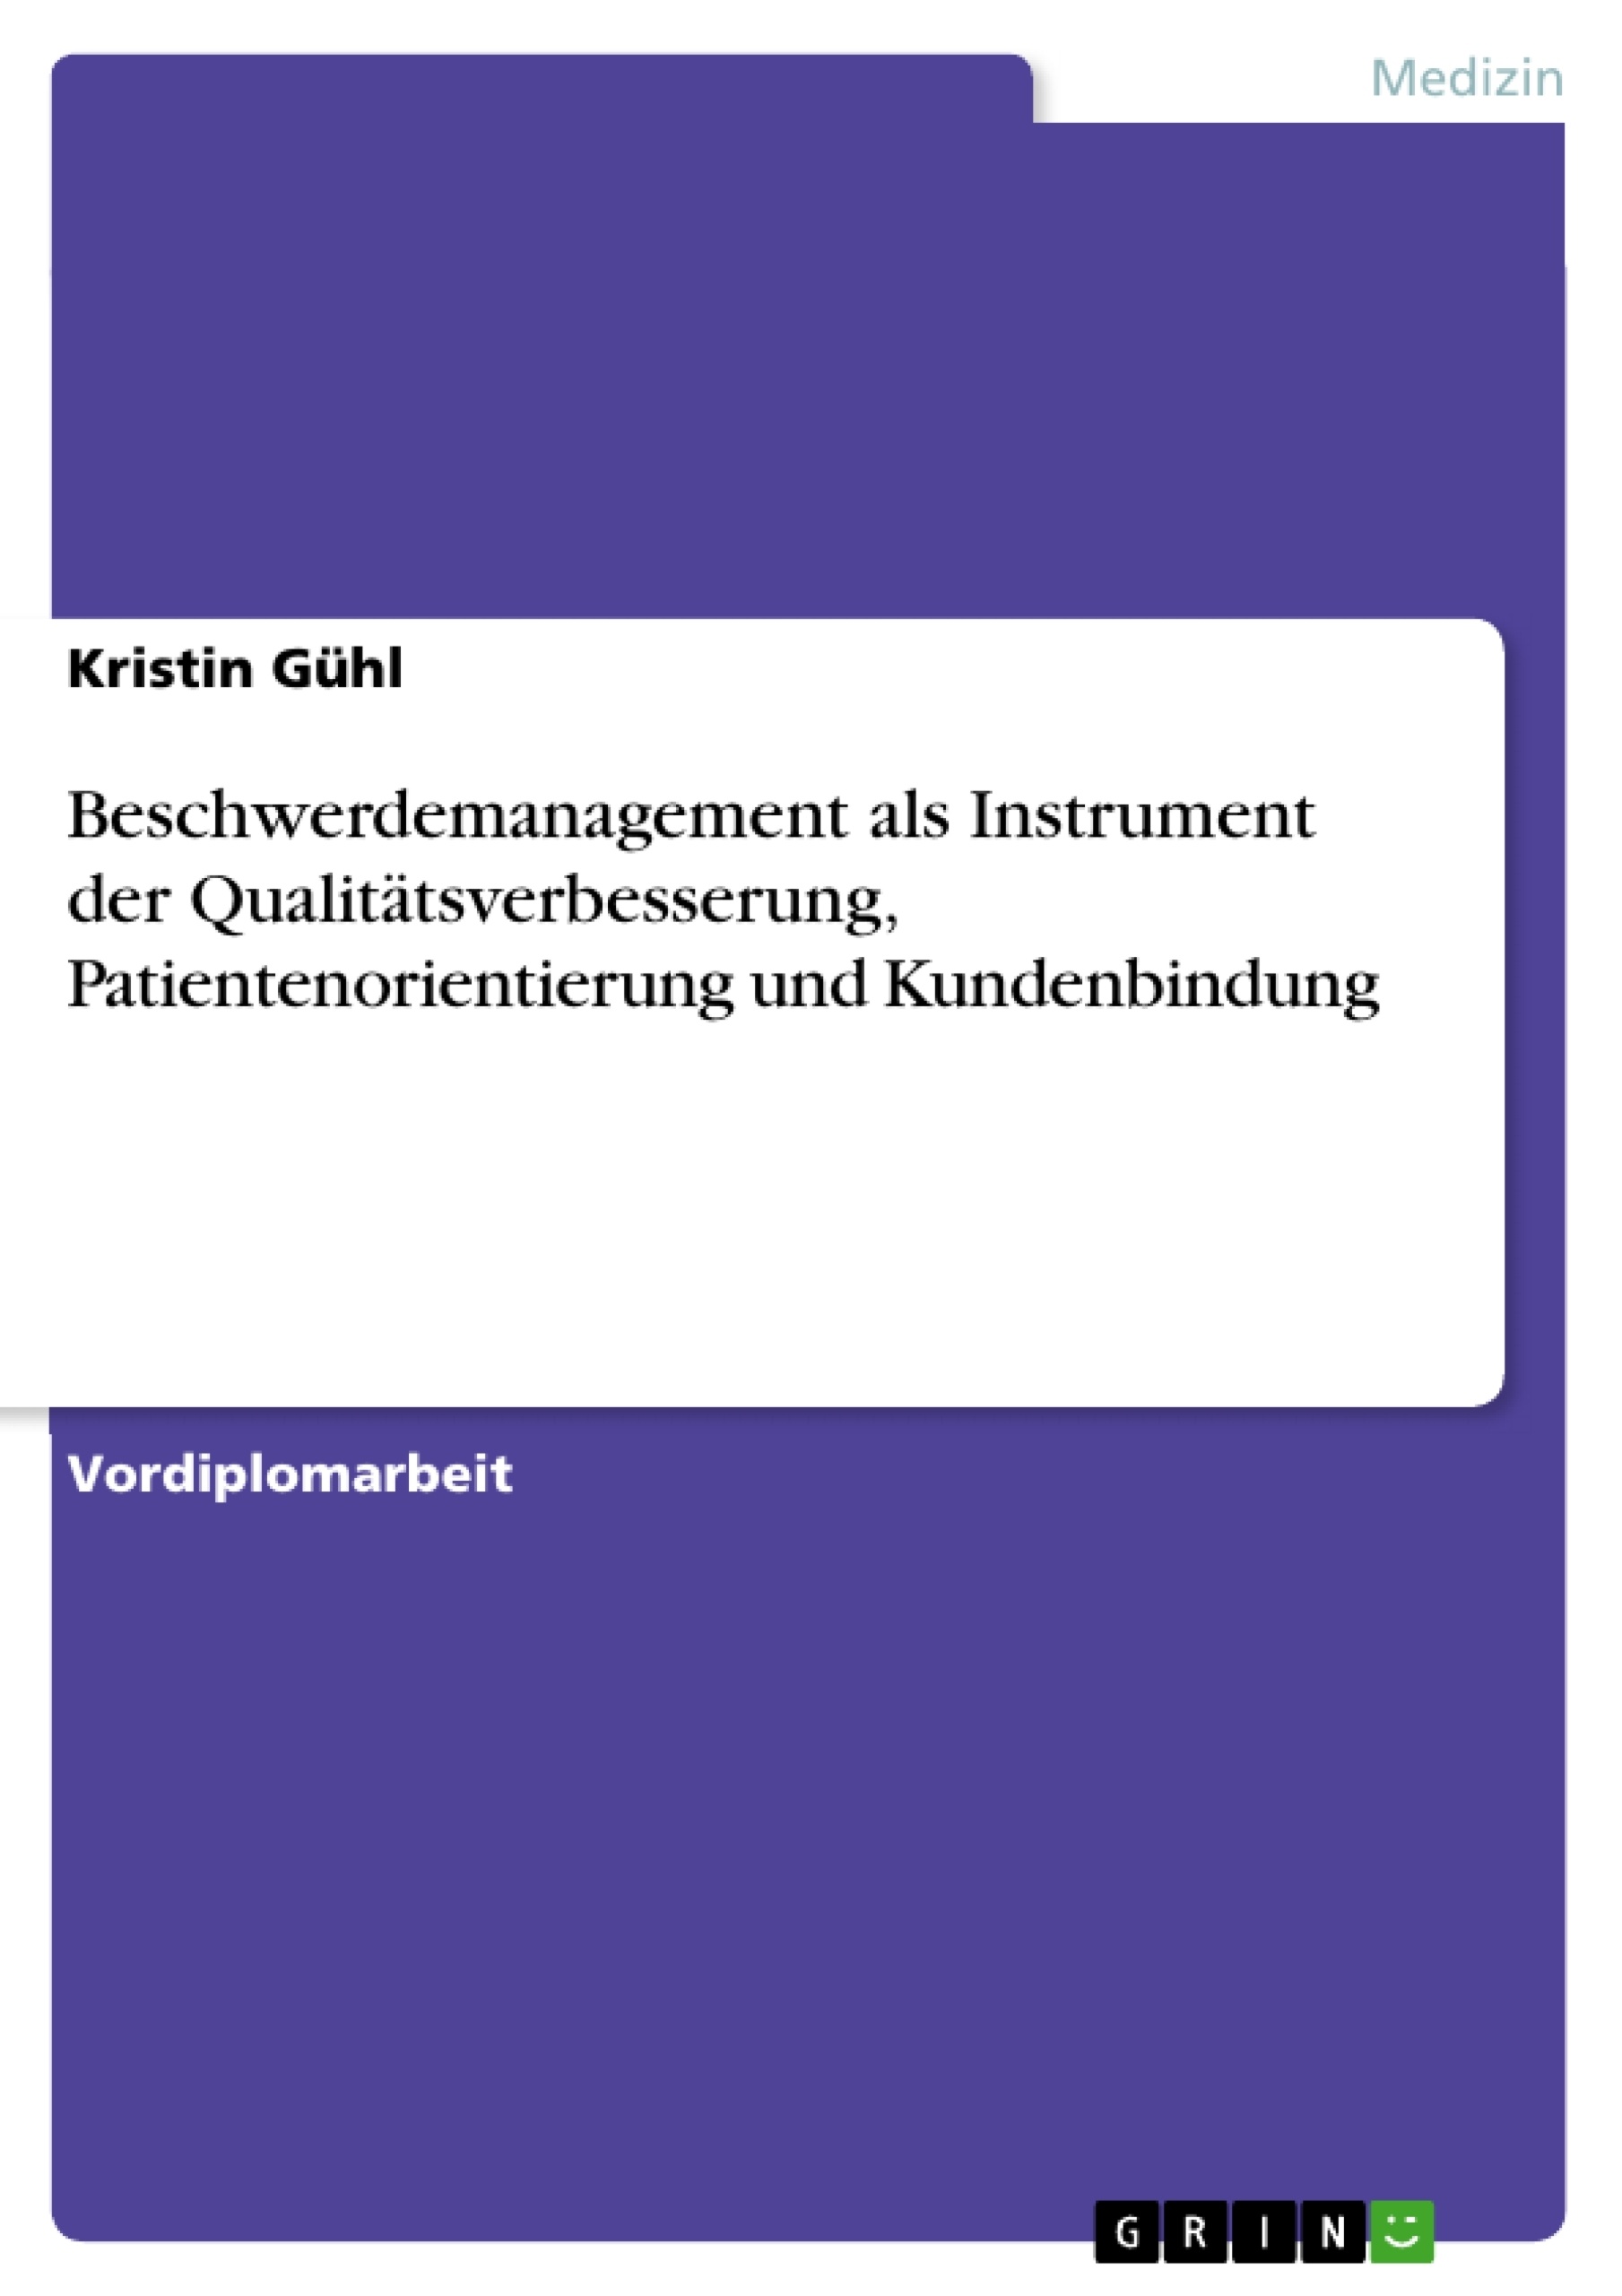 Title: Beschwerdemanagement als Instrument der Qualitätsverbesserung, Patientenorientierung und Kundenbindung